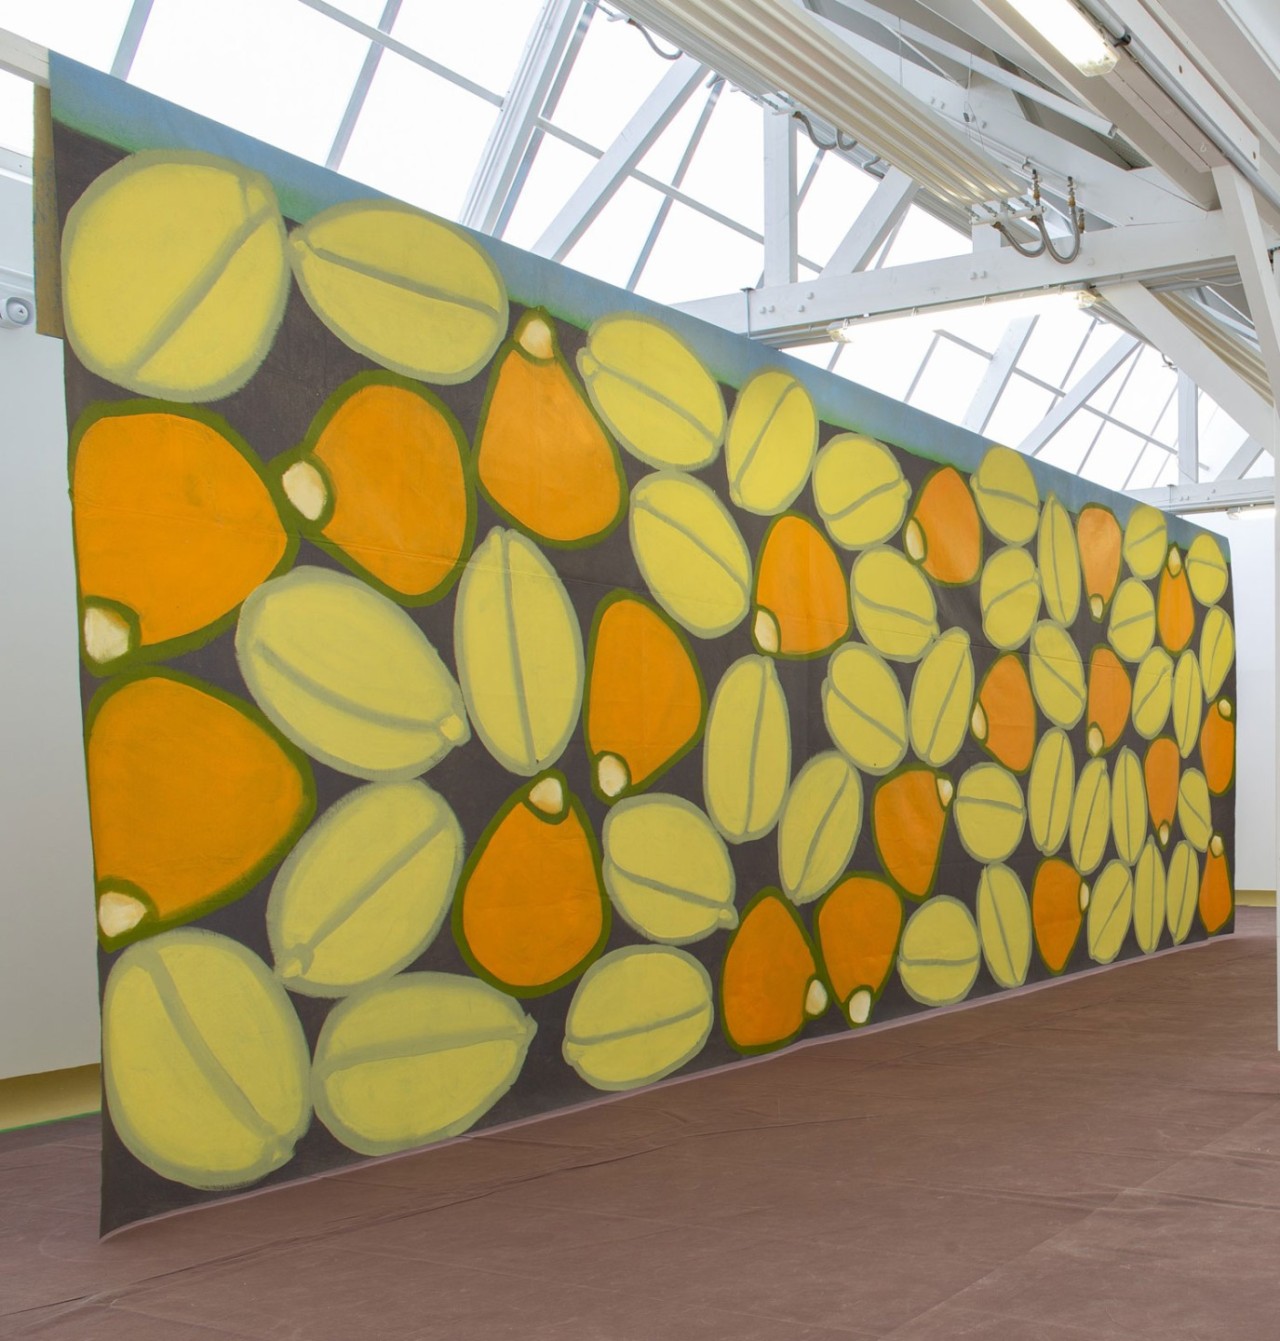 L'oeuvre est une peinture acrylique sur feutre synthétique de 400 centimètres de haut pour 900 centimètres de large. C'est une fresque avec de grosse graines de blés vertes et oranges.